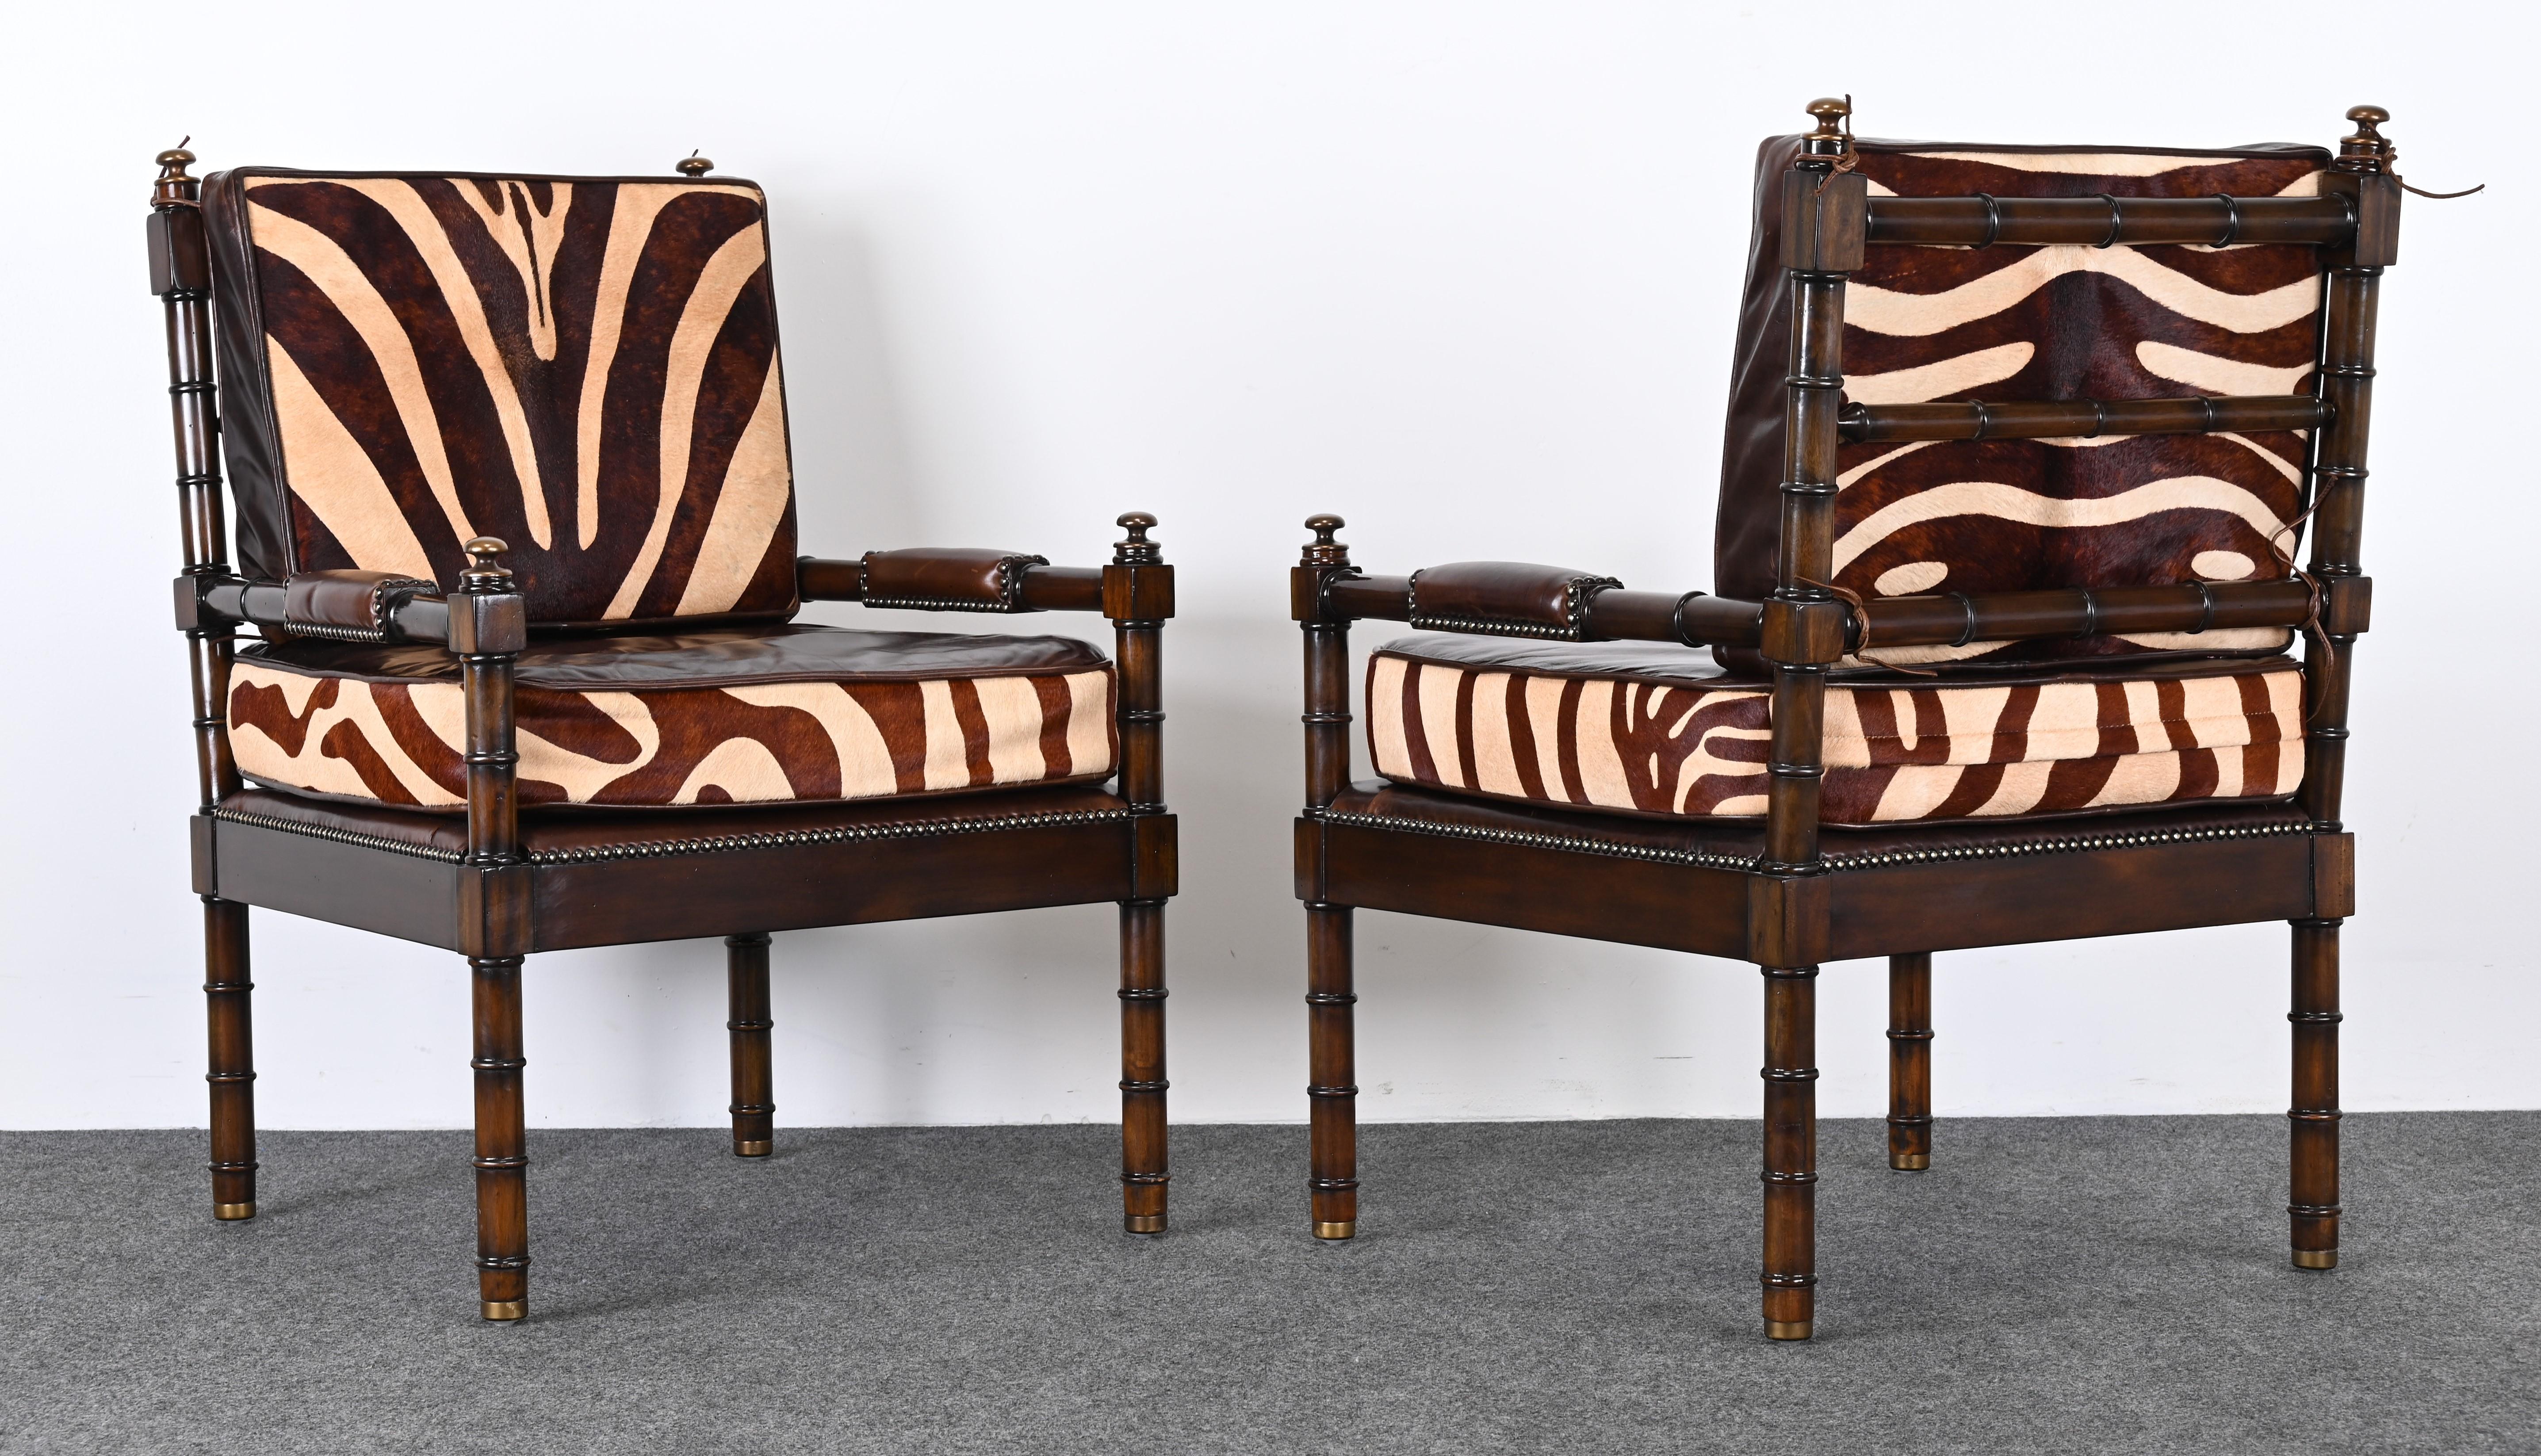 Ein prächtiges Paar Sessel aus Mahagoni-Bambusimitat mit Leder und Zebradruck aus Rindsleder. Die Stühle sind mit Messingknäufen und Rohhautdetails verziert. Diese Stühle passen in jede traditionelle oder moderne Umgebung mit einem Hauch von